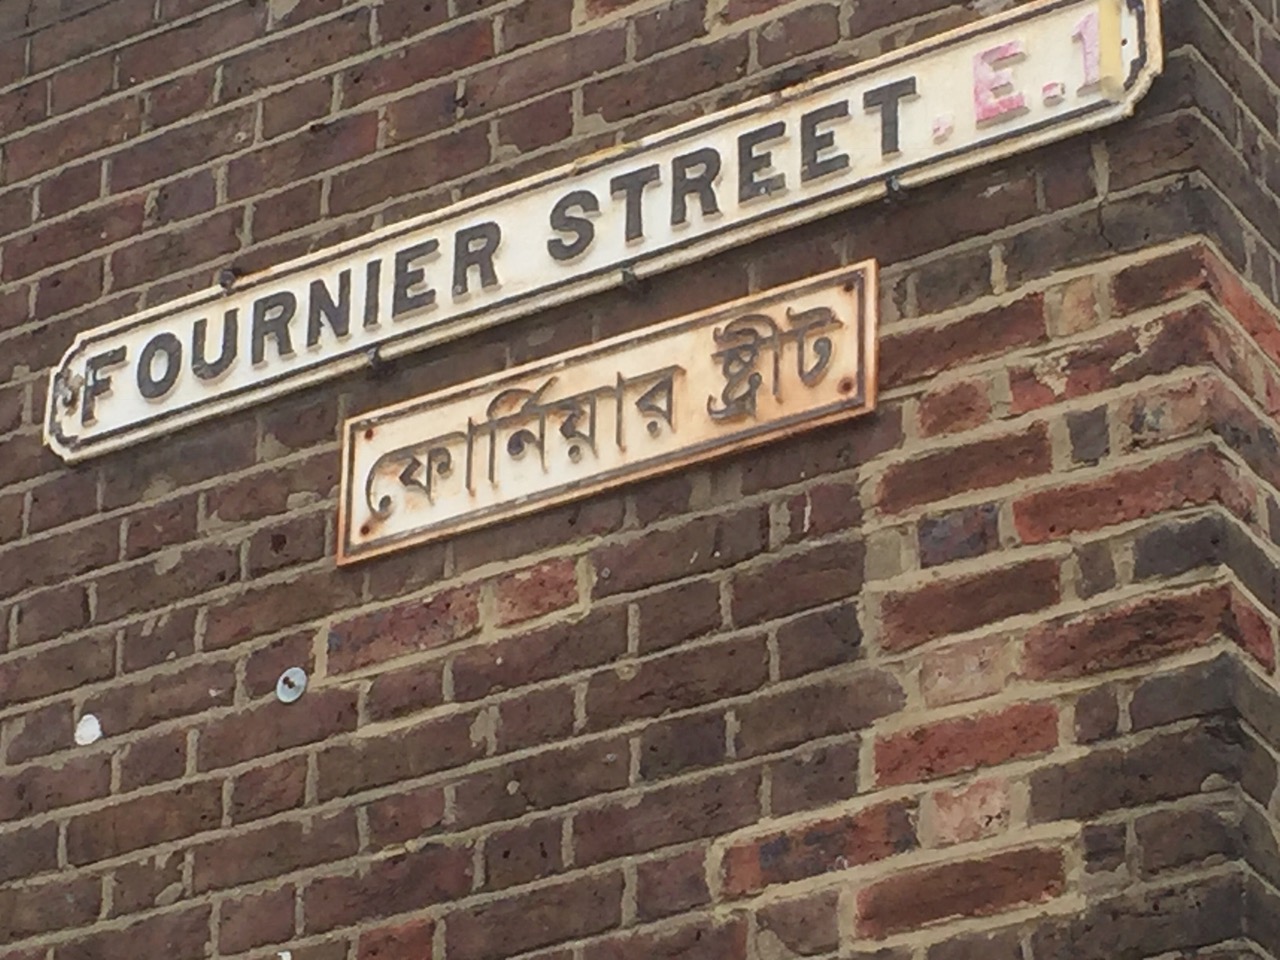 Continental Railway Journeys: Spitalfields - Fournier Street